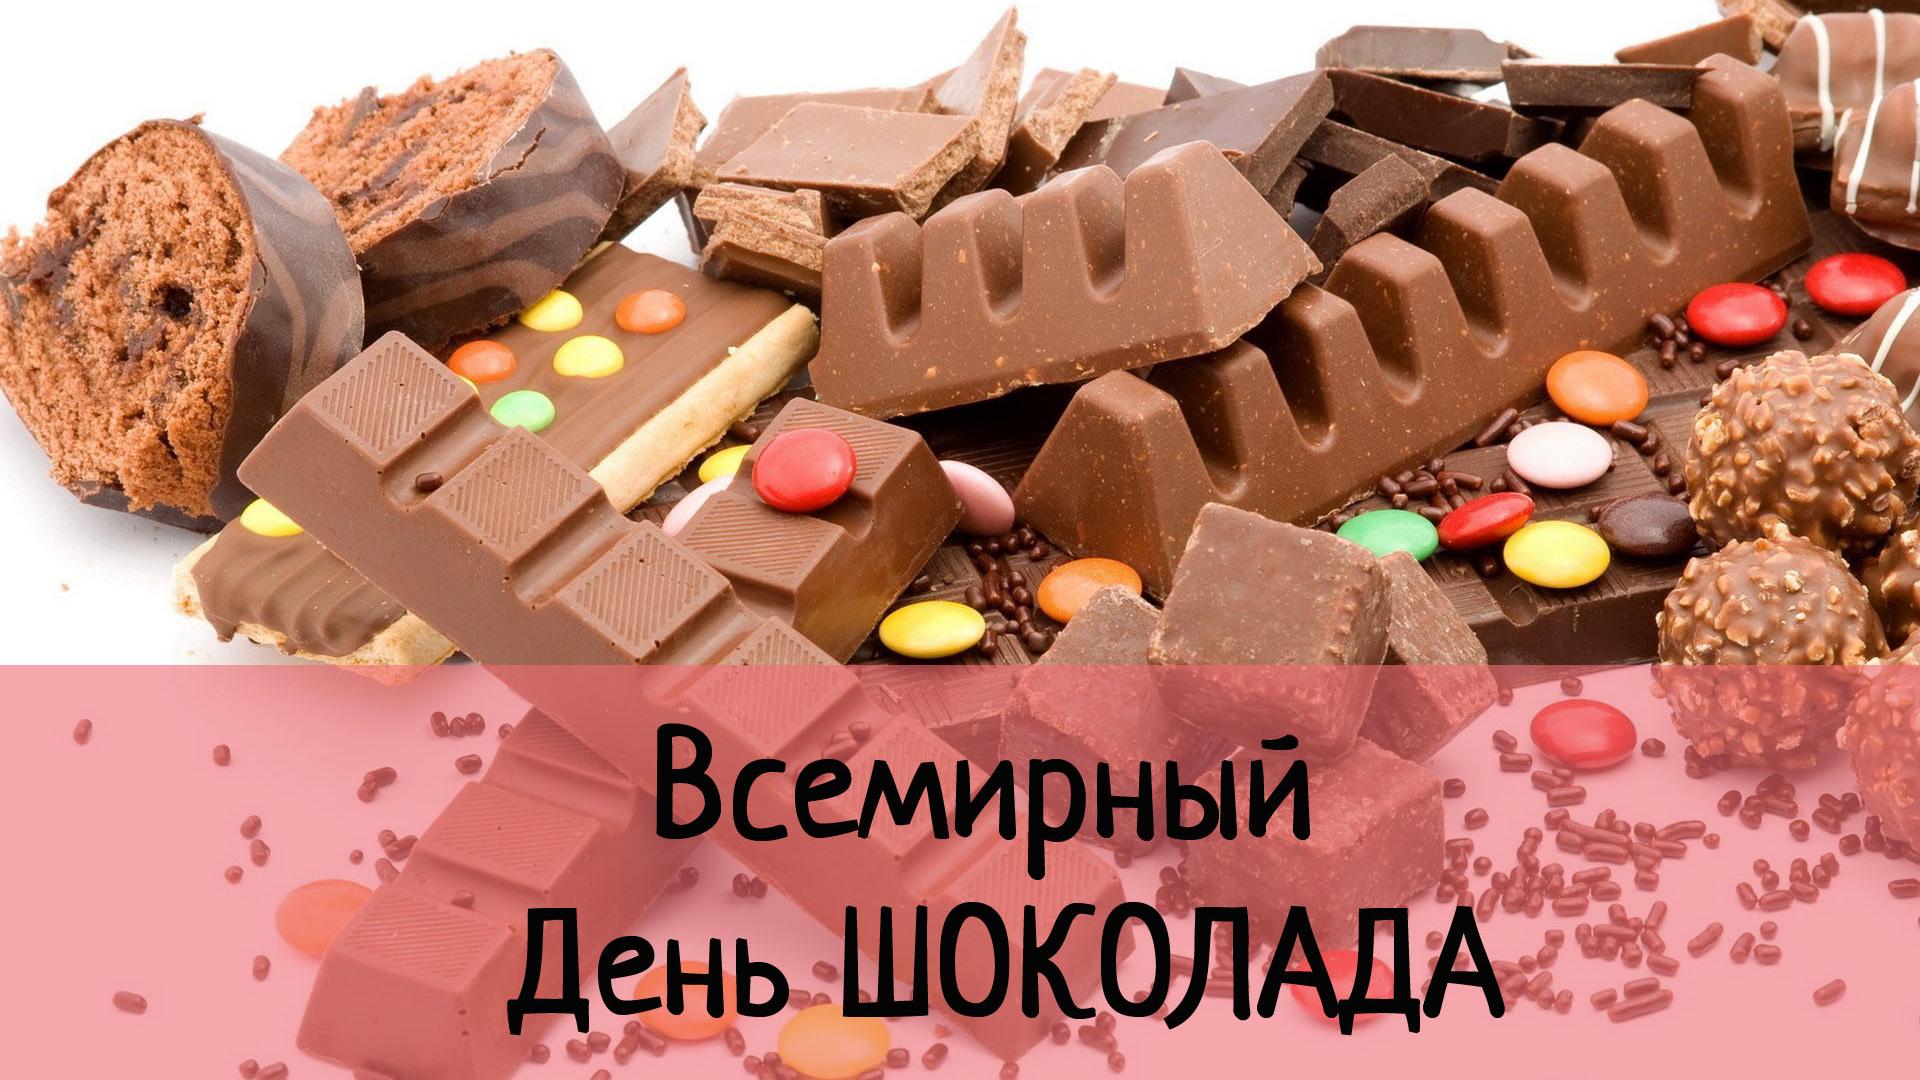 11 июля все сладкоежки отмечают Всемирный день шоколада